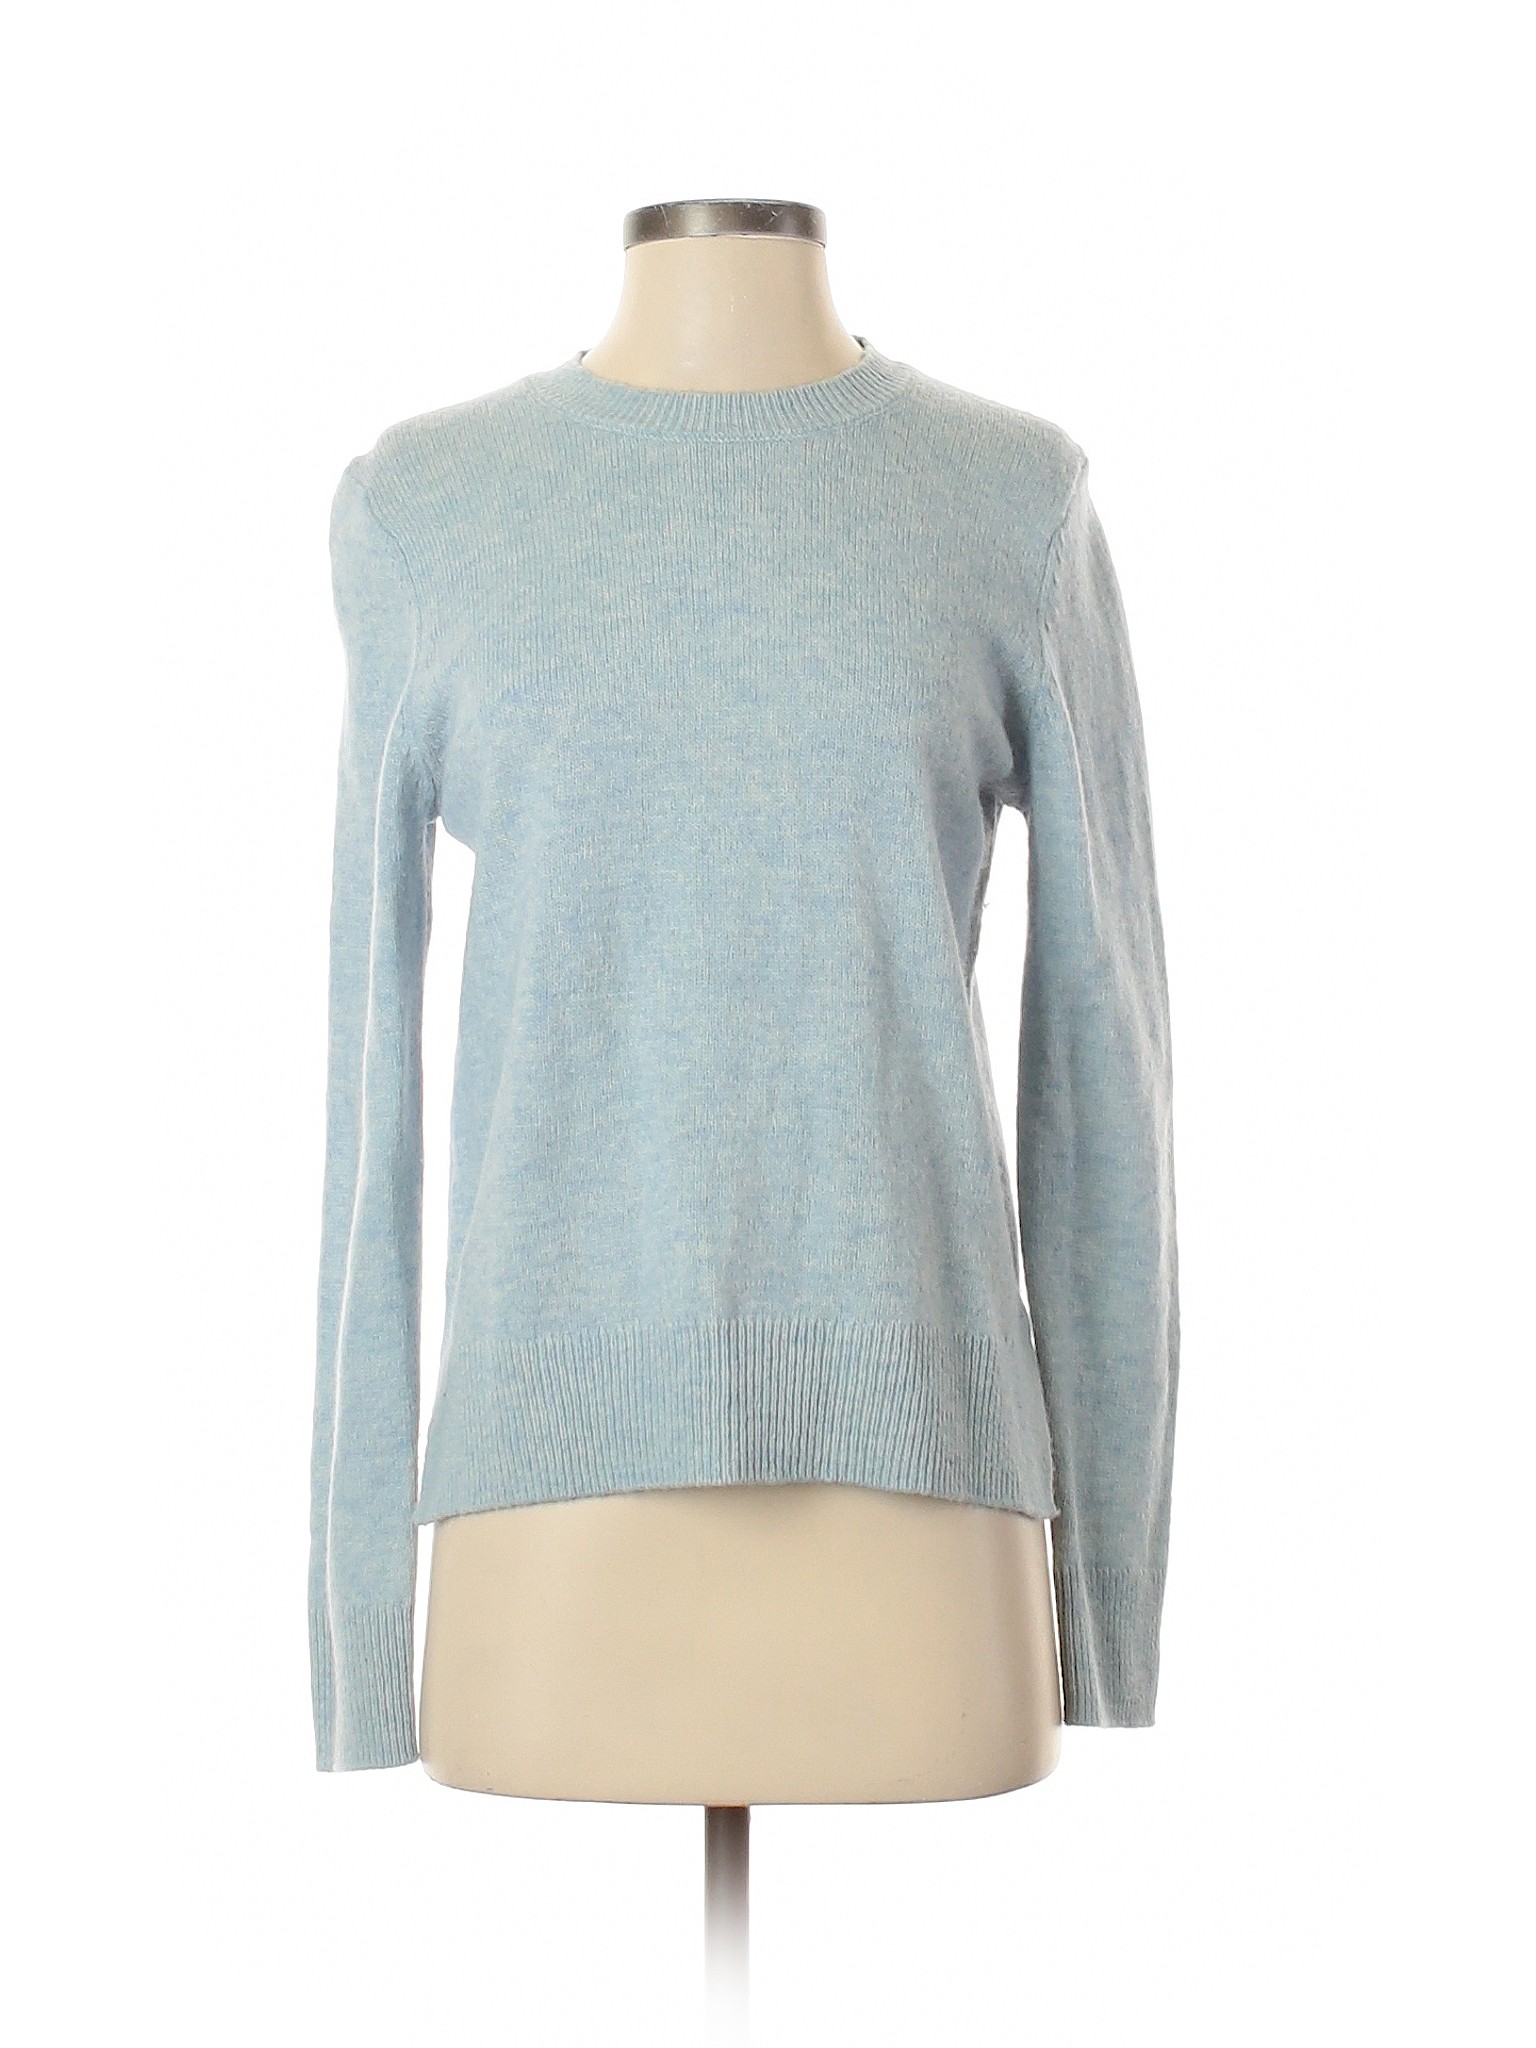 Gap Women Blue Wool Pullover Sweater S | eBay